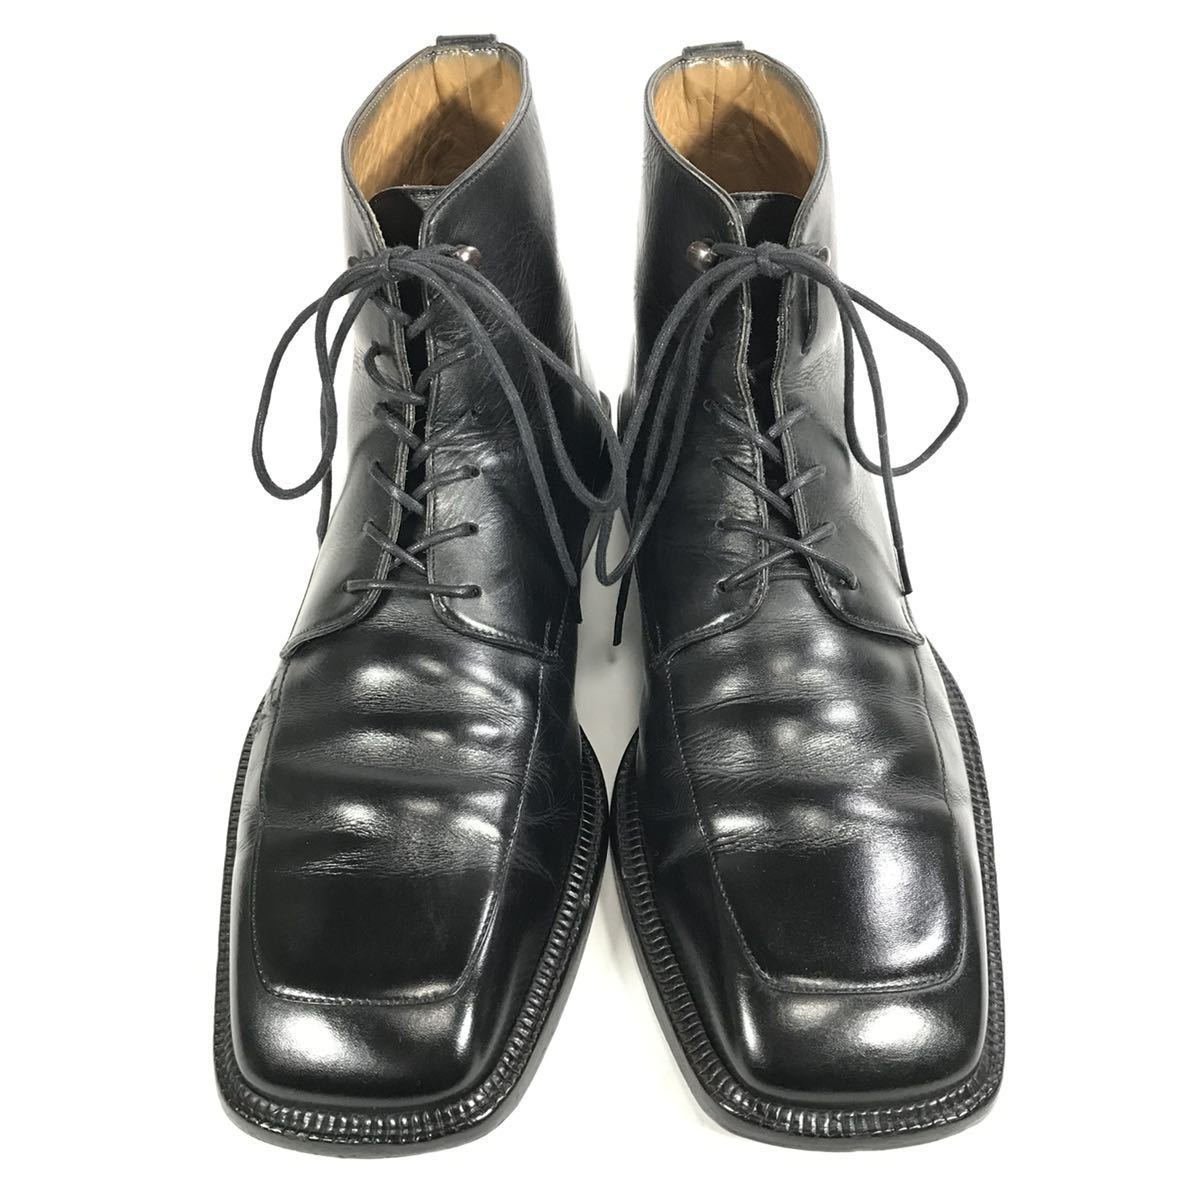 【ルイヴィトン】本物 LOUISVUITTON 靴 26cm 黒 ショートブーツ ハイカット ビジネスシューズ 本革 レザー 男性用 メンズ イタリア製 7 1/2_画像2